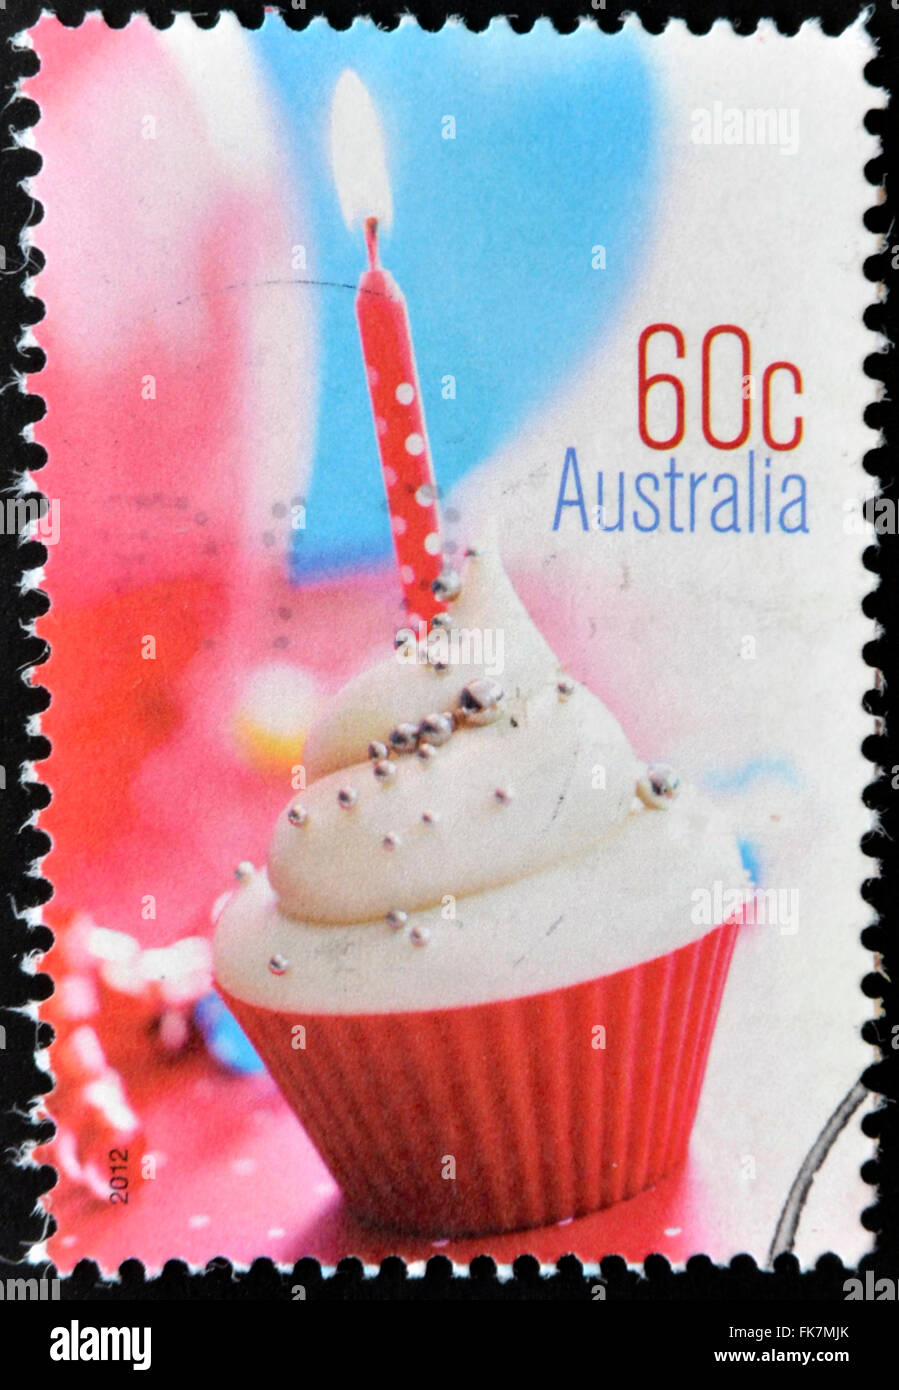 Australien - ca. 2012: Eine Briefmarke gedruckt in Australien gewidmet "Momente", zeigt Cupcake, ca. 2012 Stockfoto